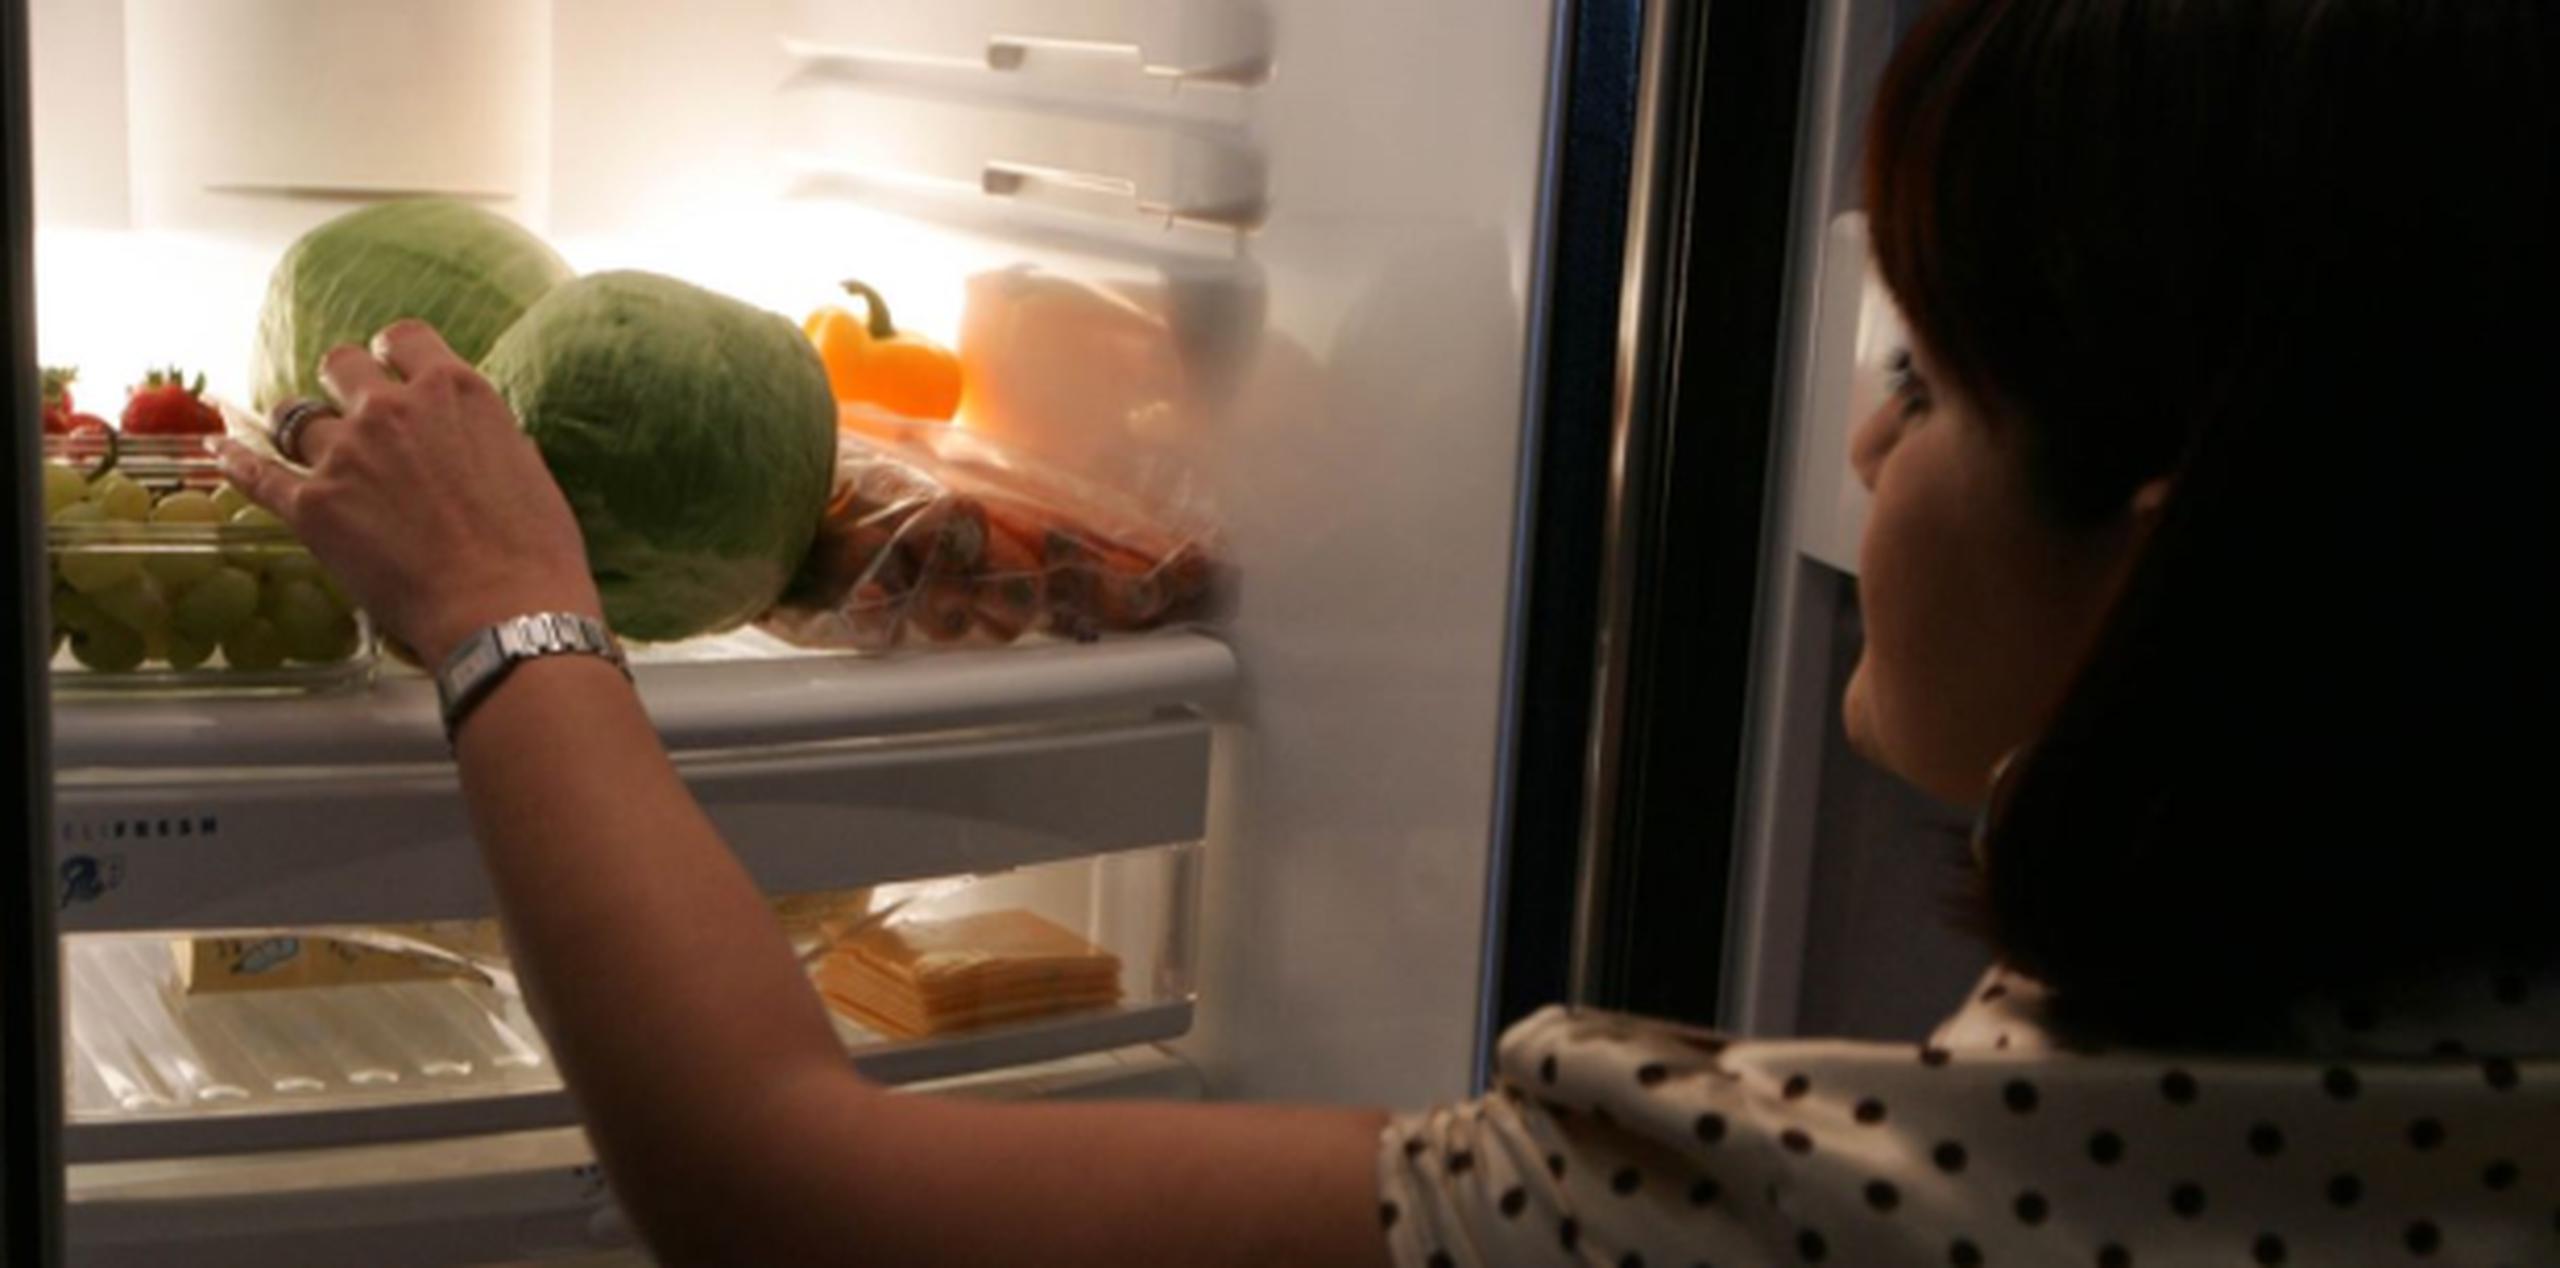 Agrupa los alimentos, tanto en el refrigerador como en el congelador. Esto ayudará a mantenerlos fríos por más tiempo. (Archivo)